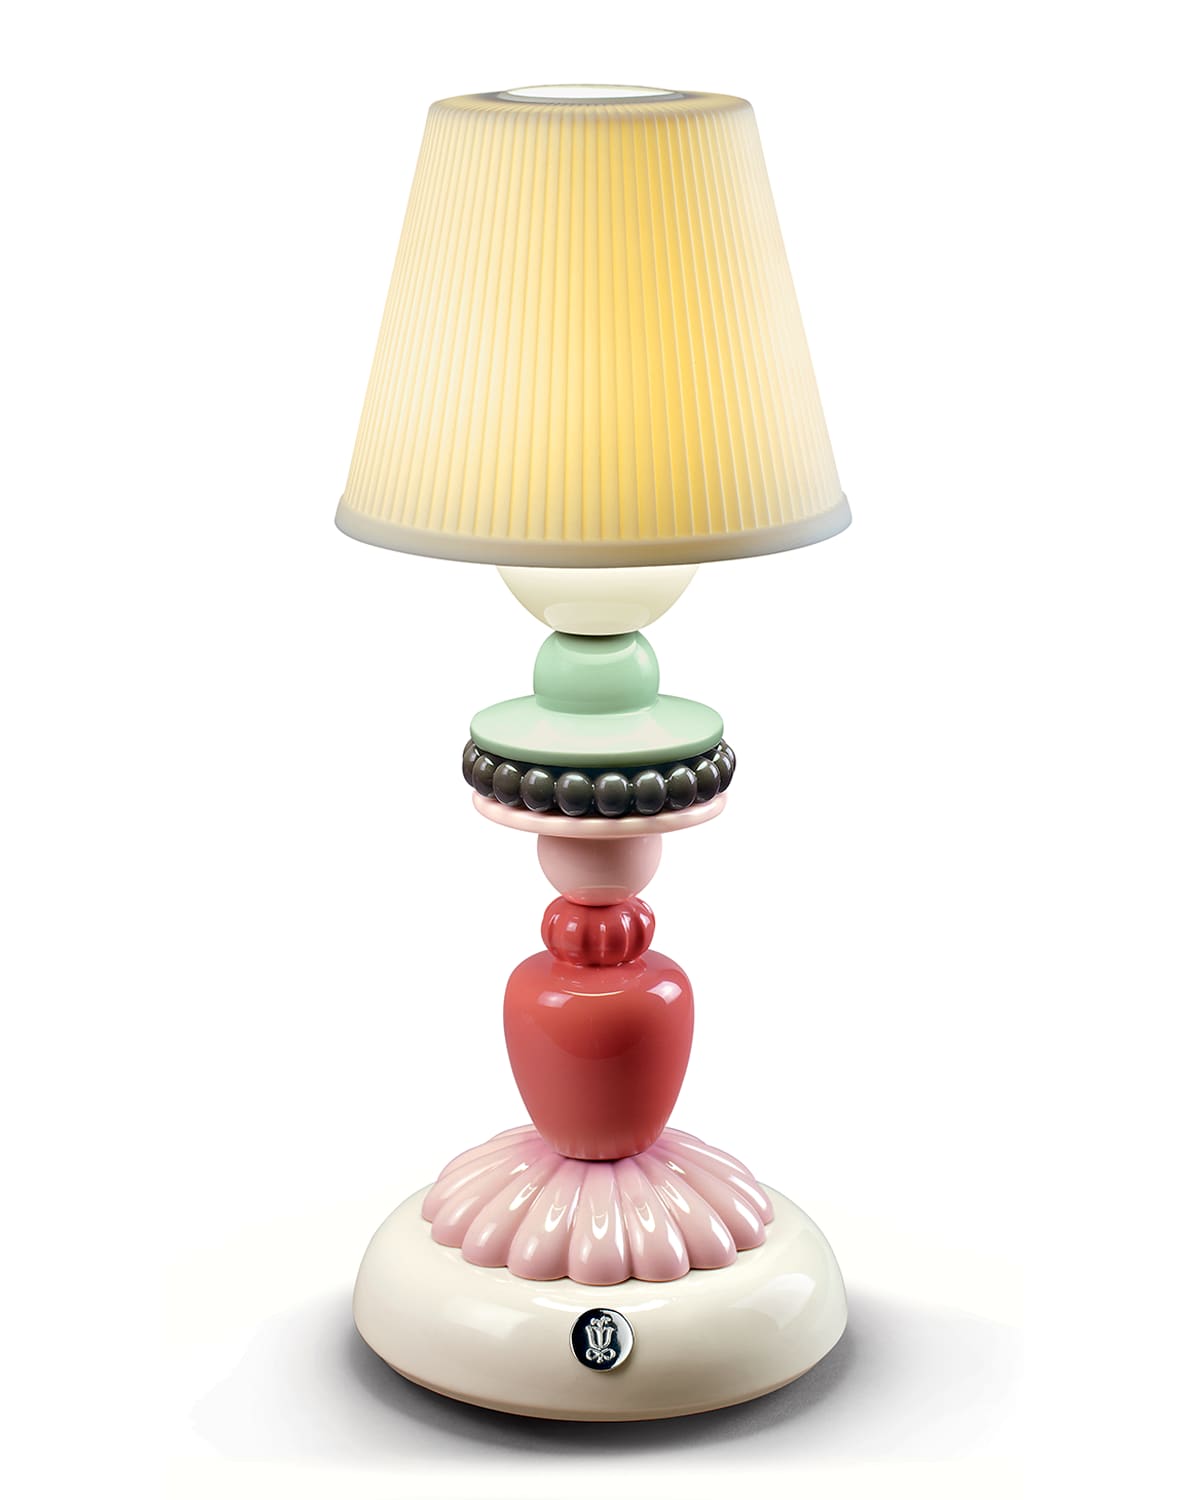 Lladro Firefly Table Lamp by Olga Hanono